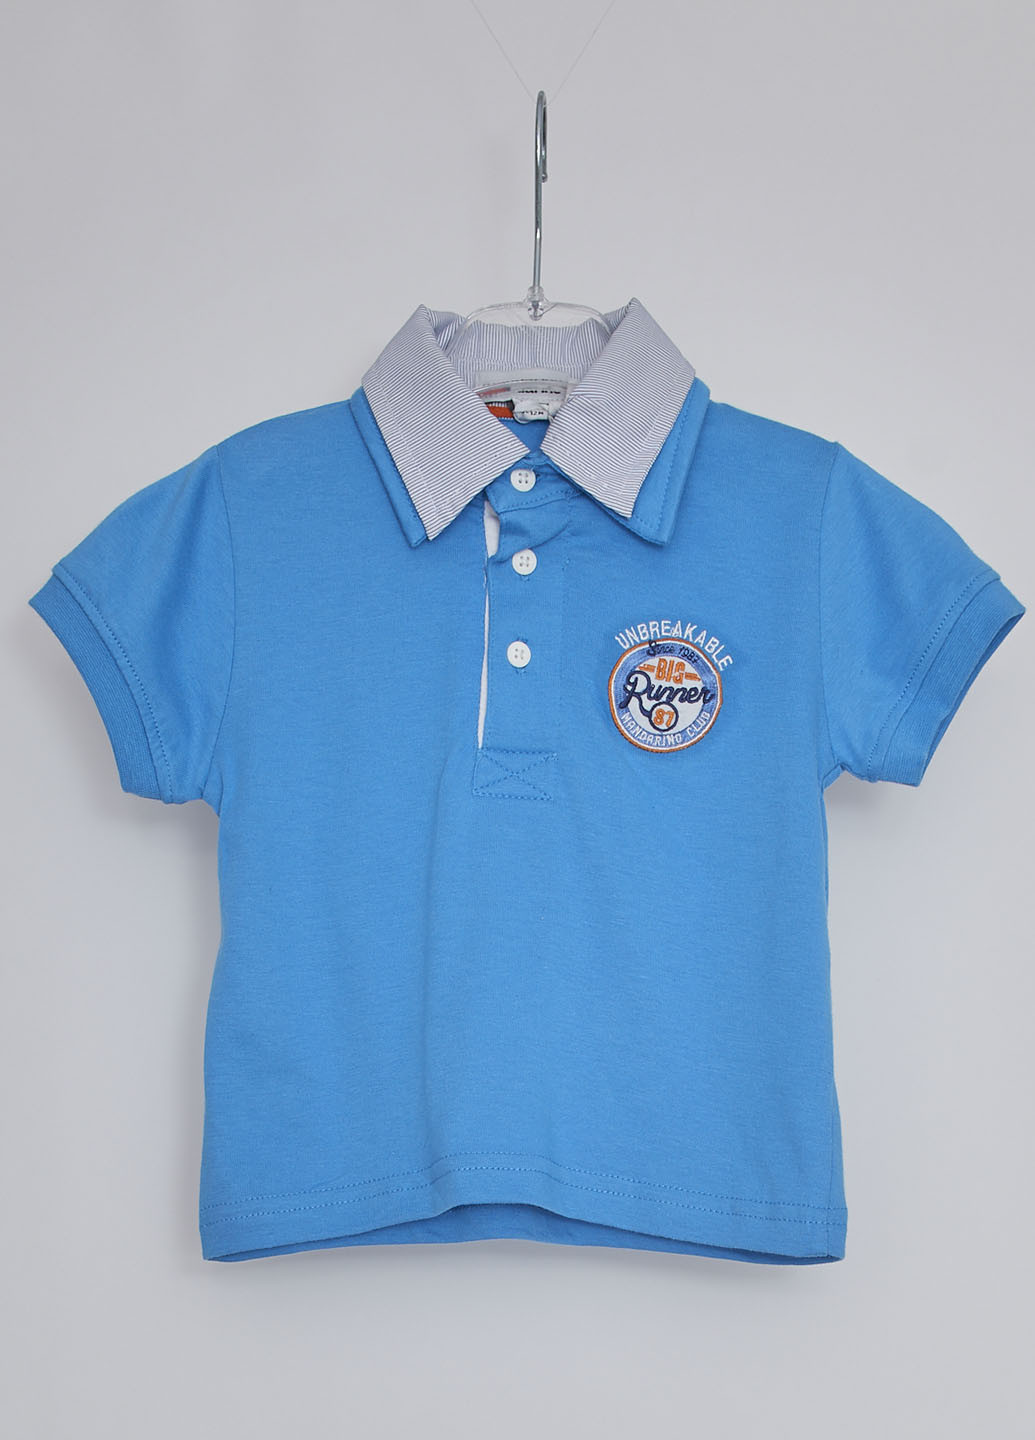 Синяя детская футболка-поло для мальчика Mandarino с логотипом